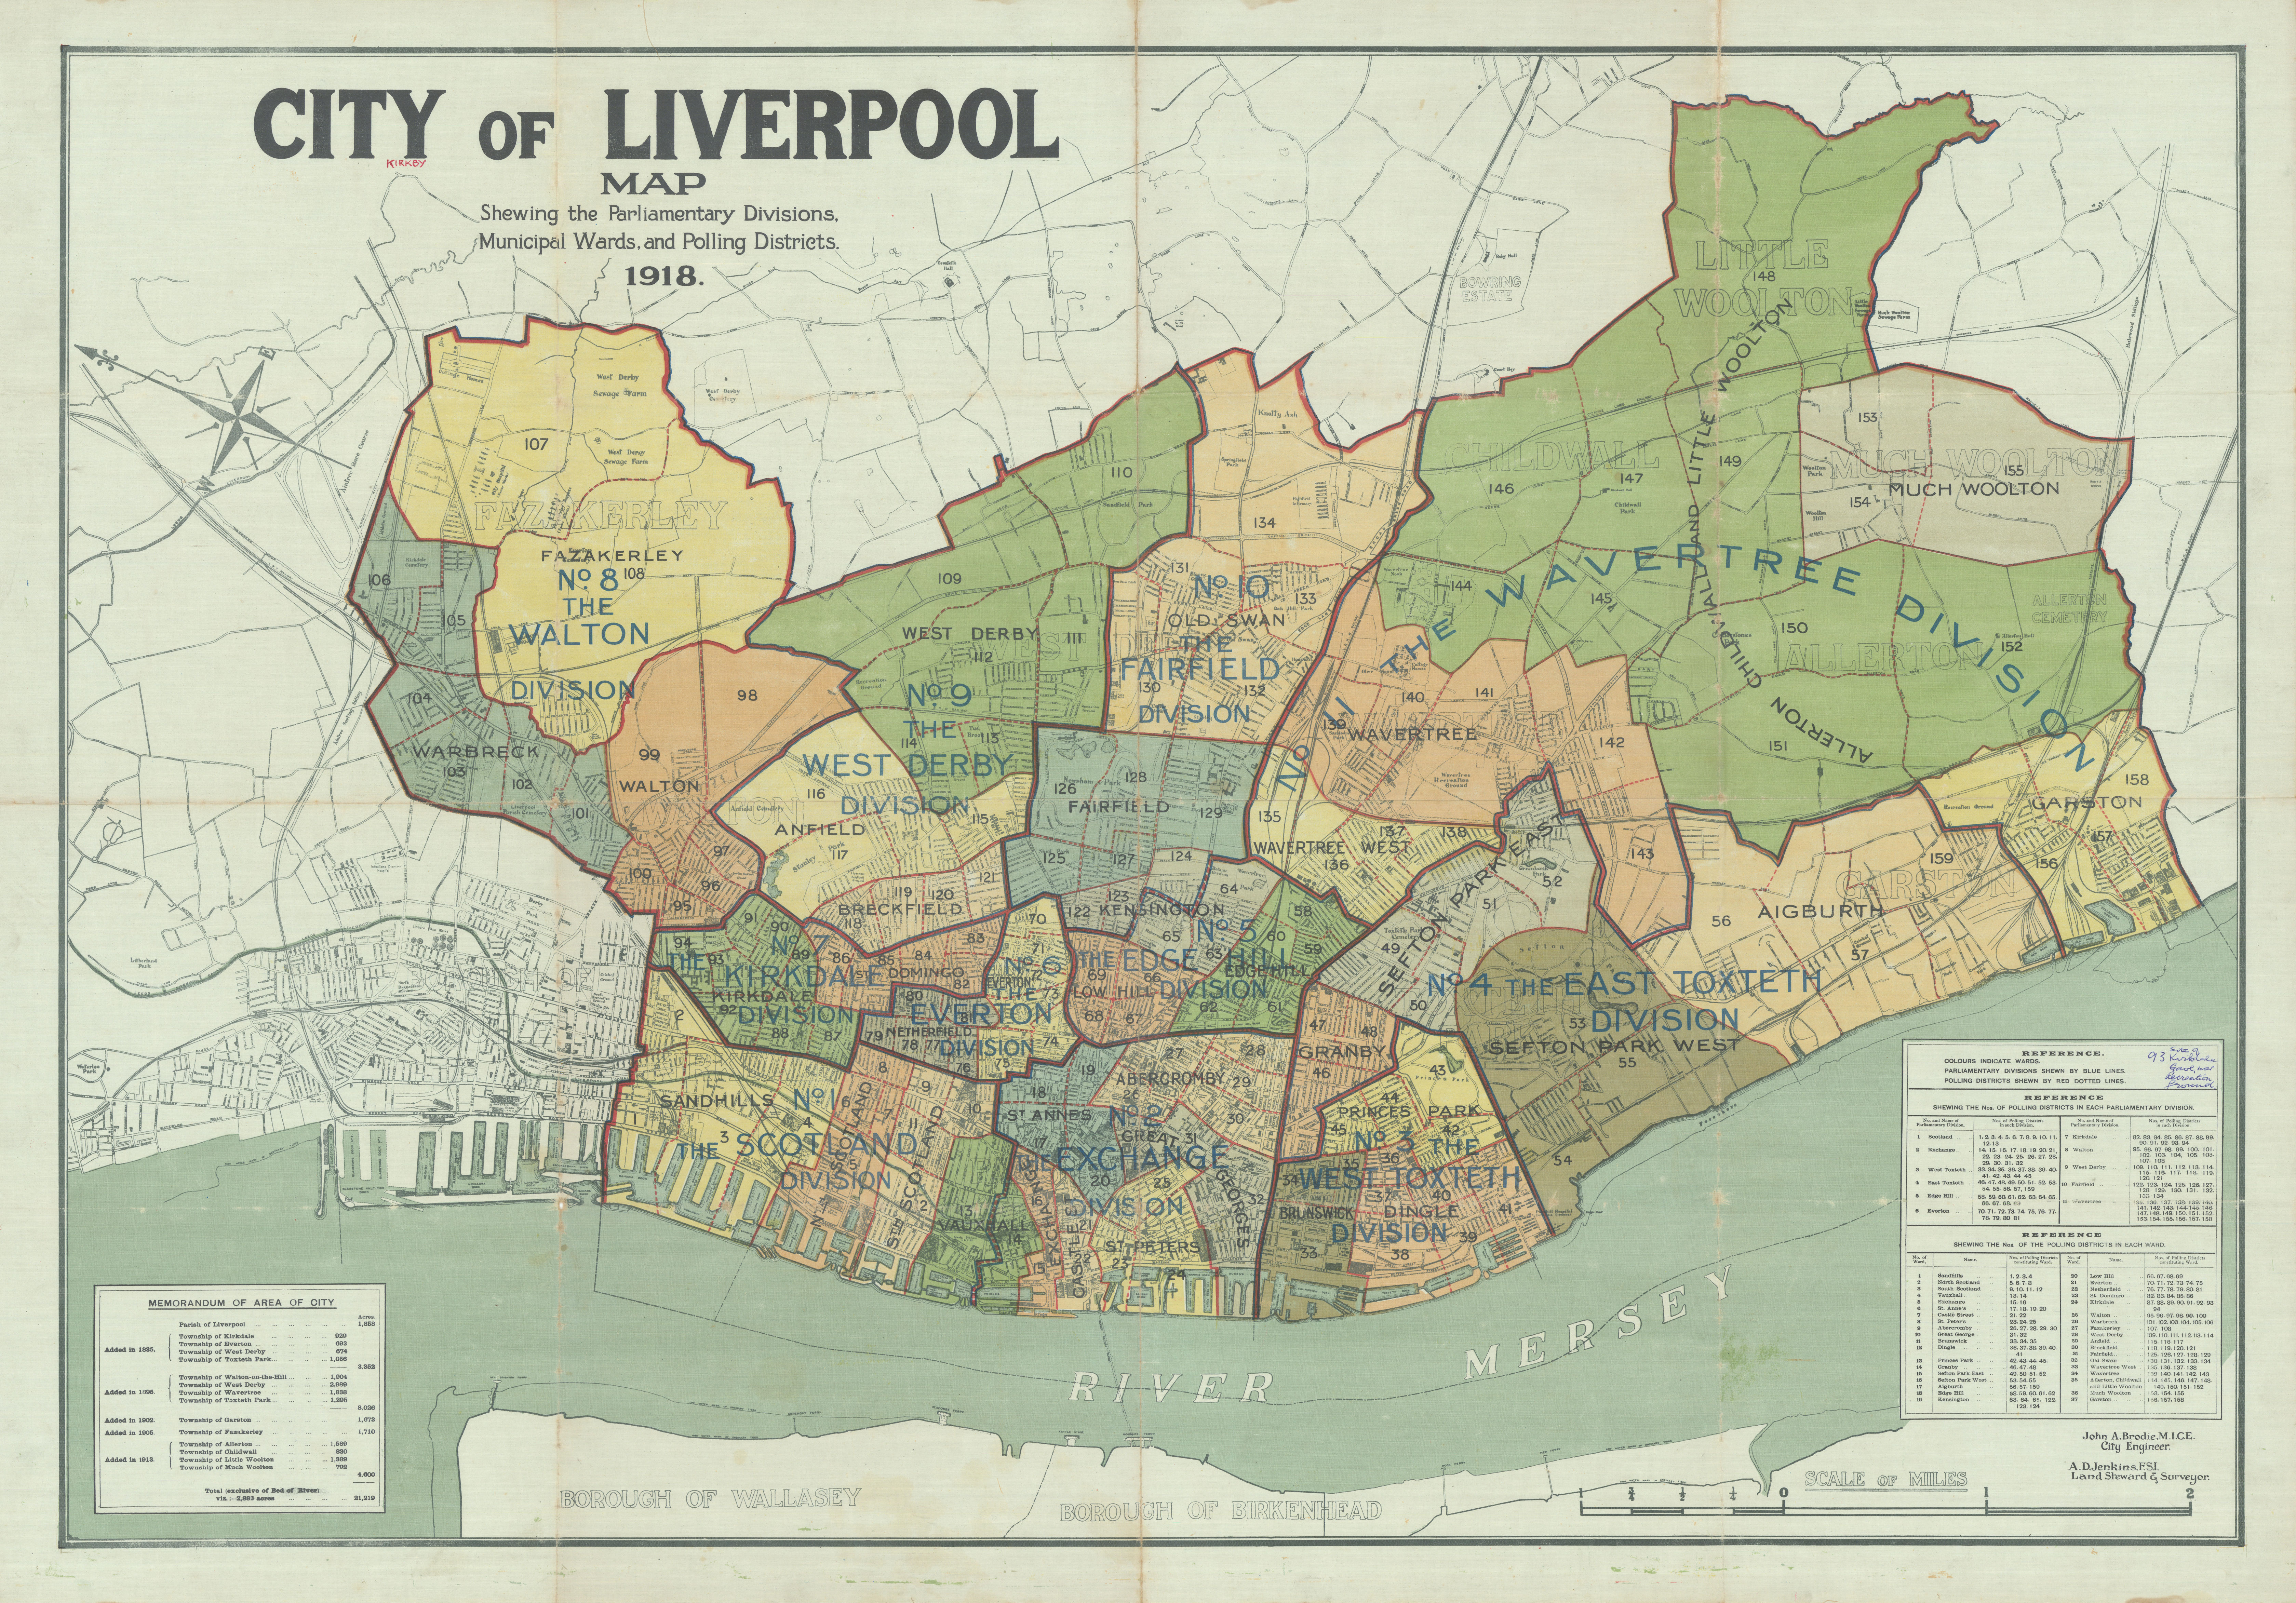 Lancashire | Antique Lancashire county maps, old road maps, Liverpool &  Manchester city plans & vintage art prints